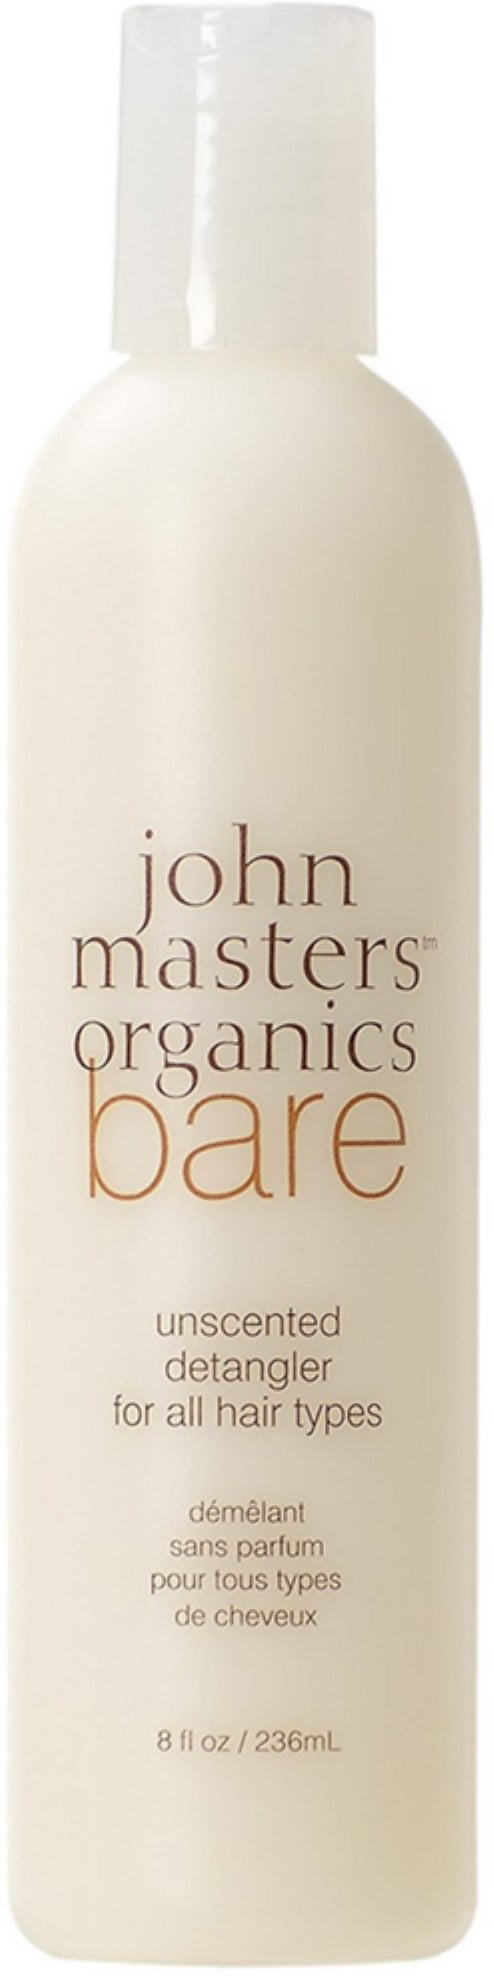 John Masters Organics - John Masters Organics Bare Detangler 8 oz (Pack